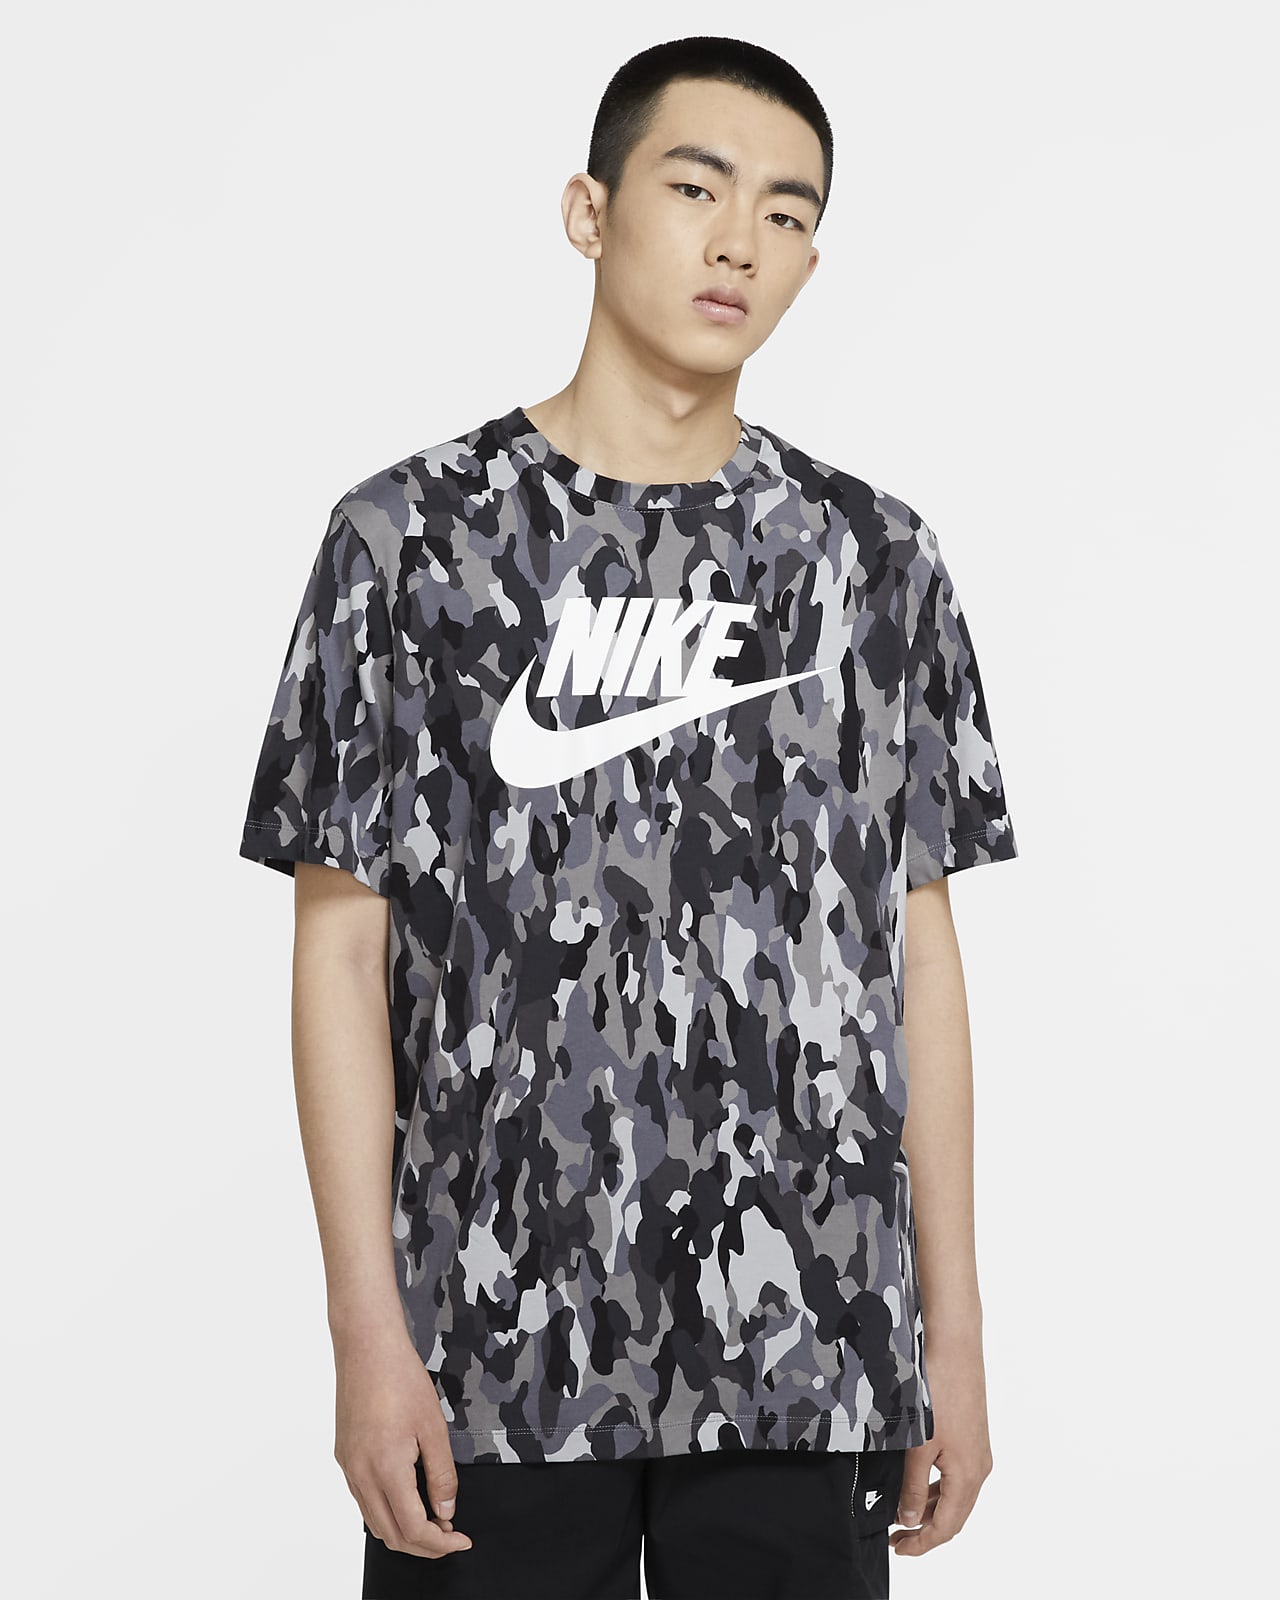 Printed Camo T-Shirt. Nike 